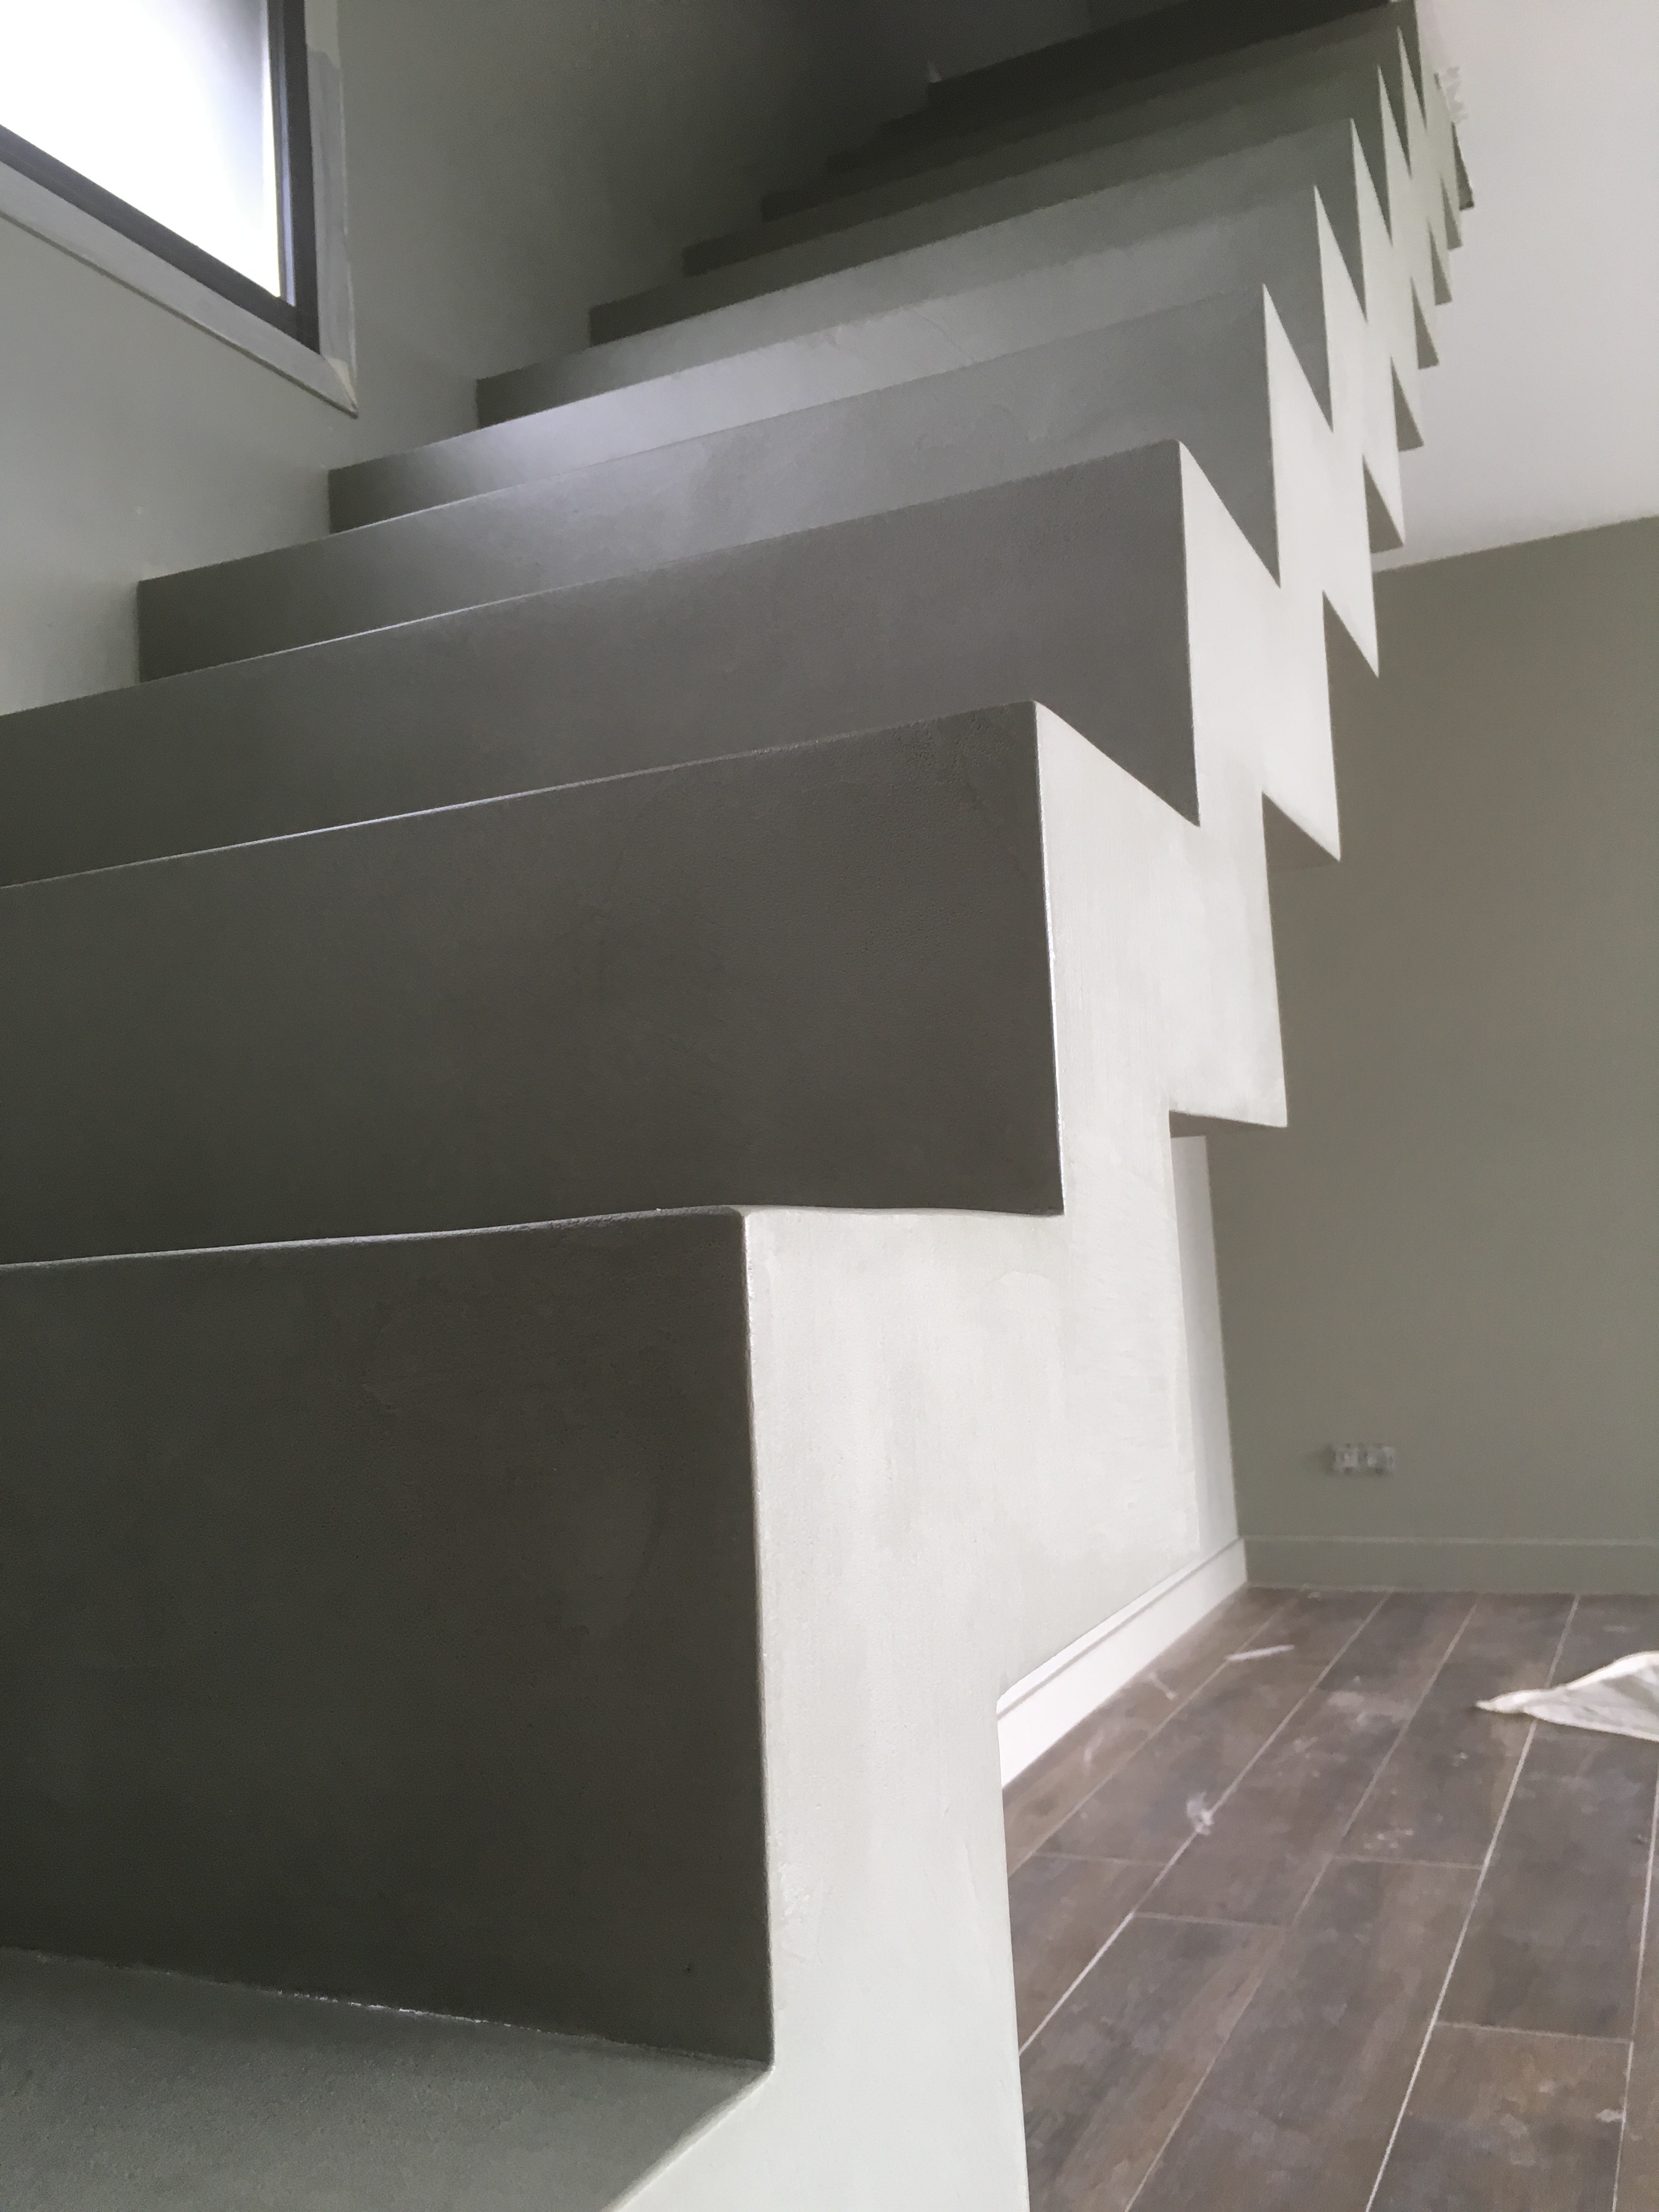 magnifique escalier crémaillère droit en béton ciré vernis mat vert bourrache à serres-castet pour un architecte